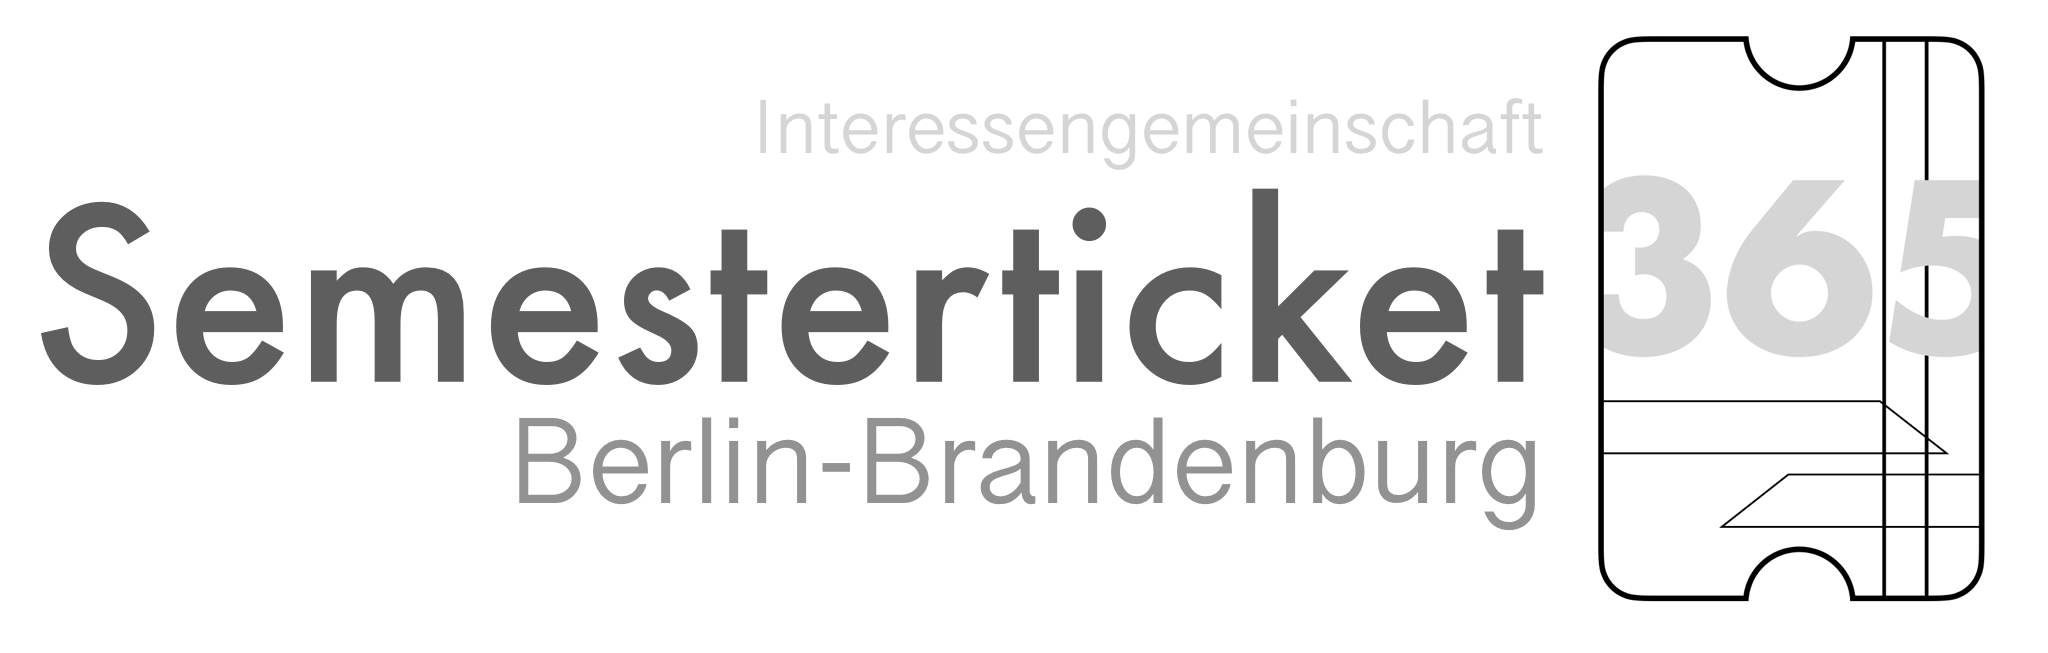 Logo und Schriftzug der Interessensgemeinschaft Berlin-Brandenburg